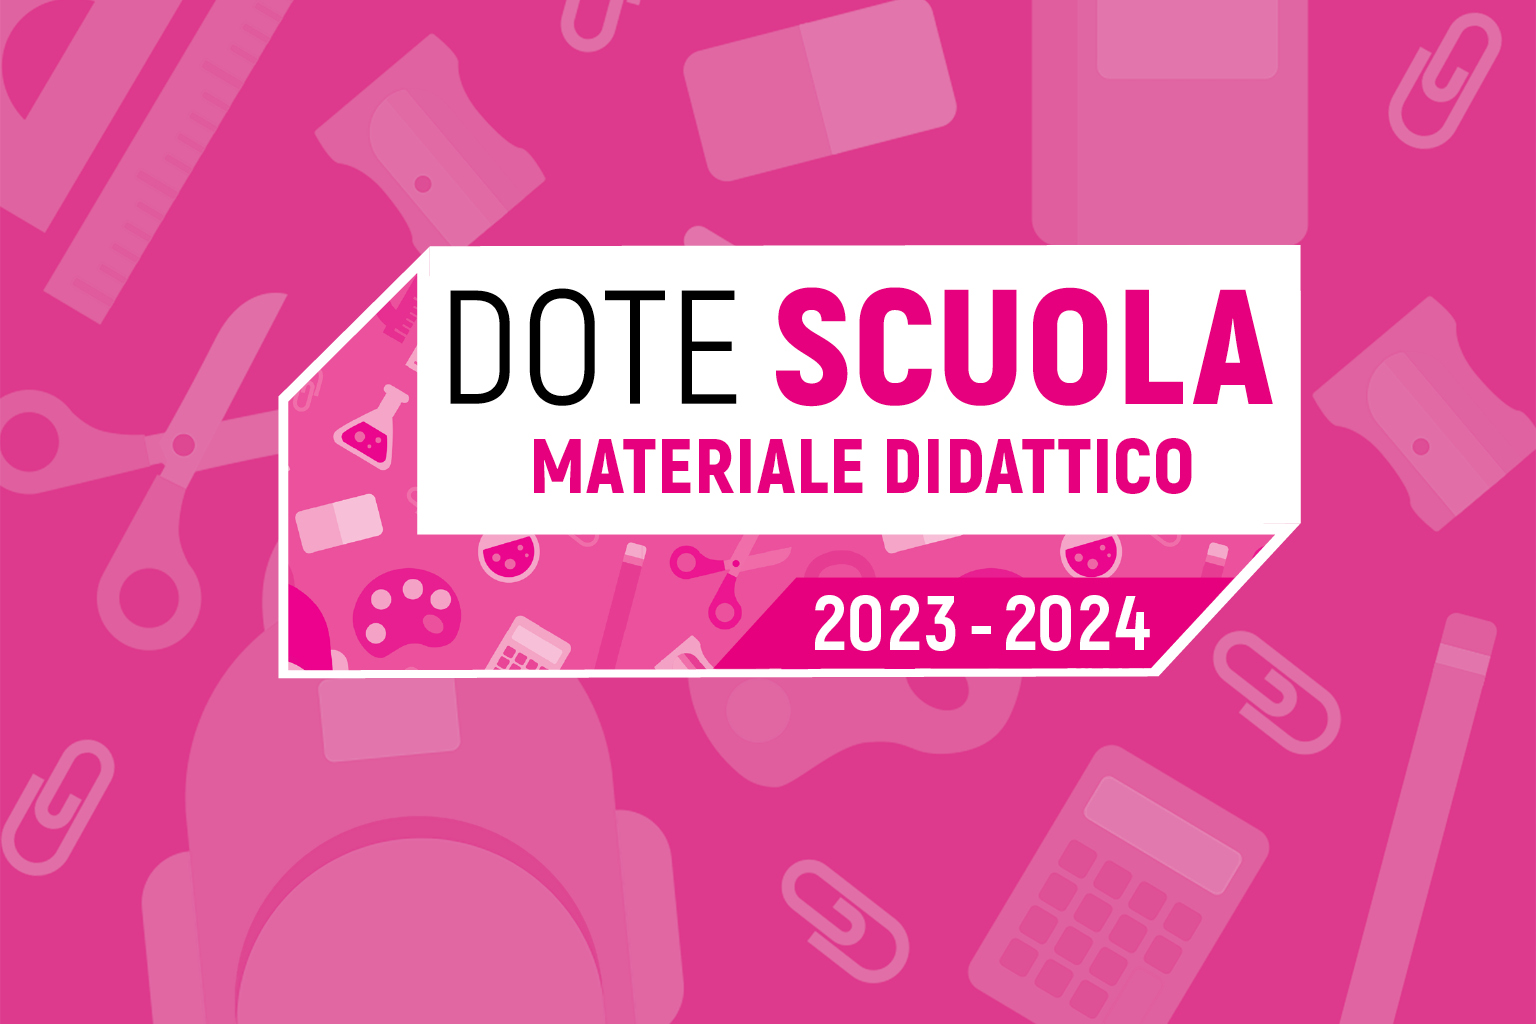 Dote Scuola 2023/2024: Materiale didattico e borse di studio